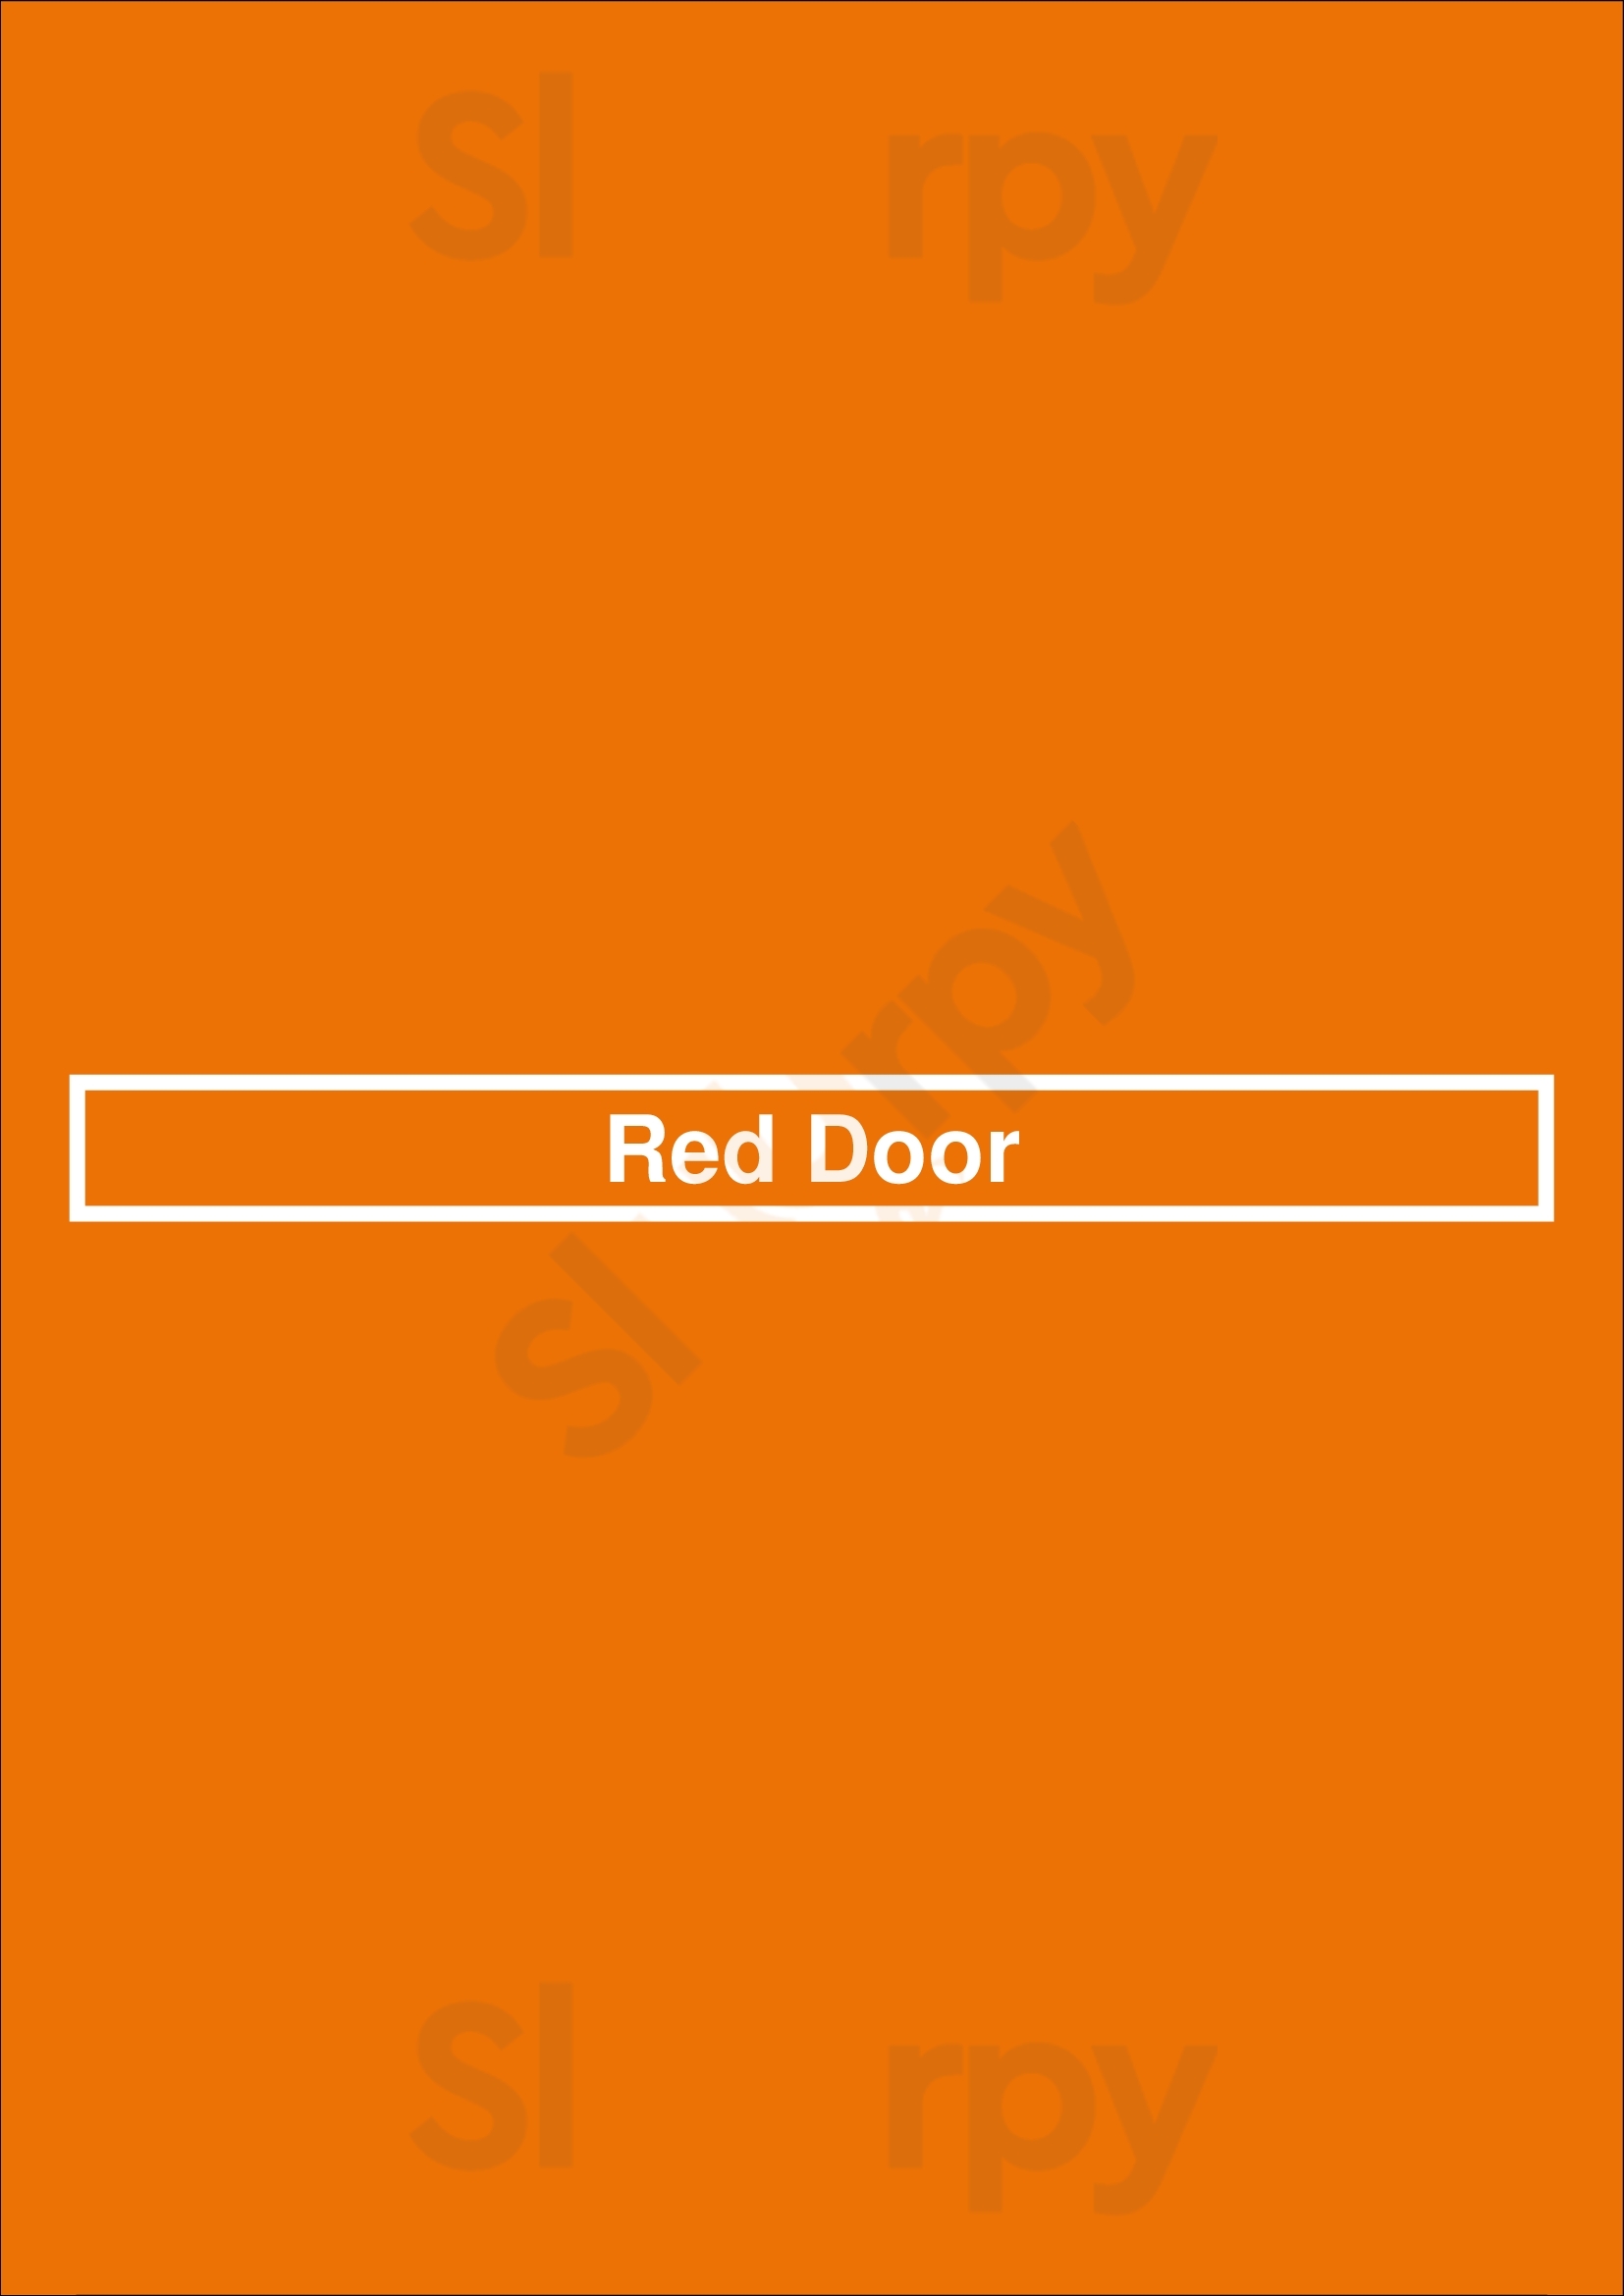 Red Door Dundas Menu - 1